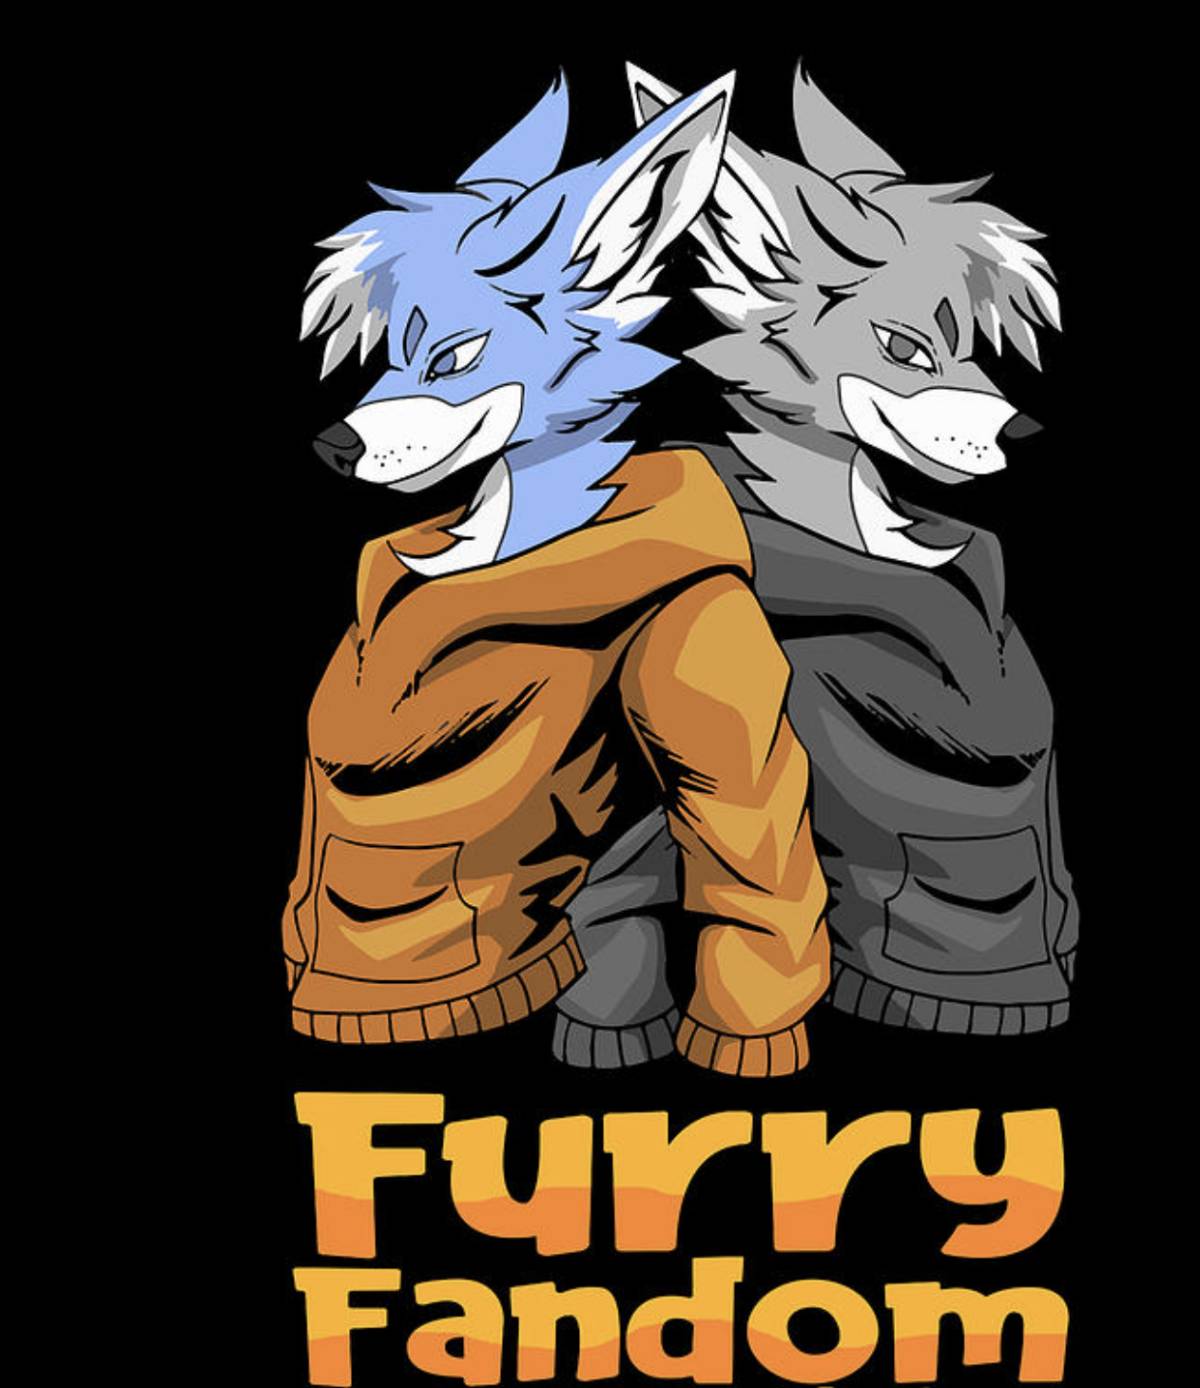 Furry fandom